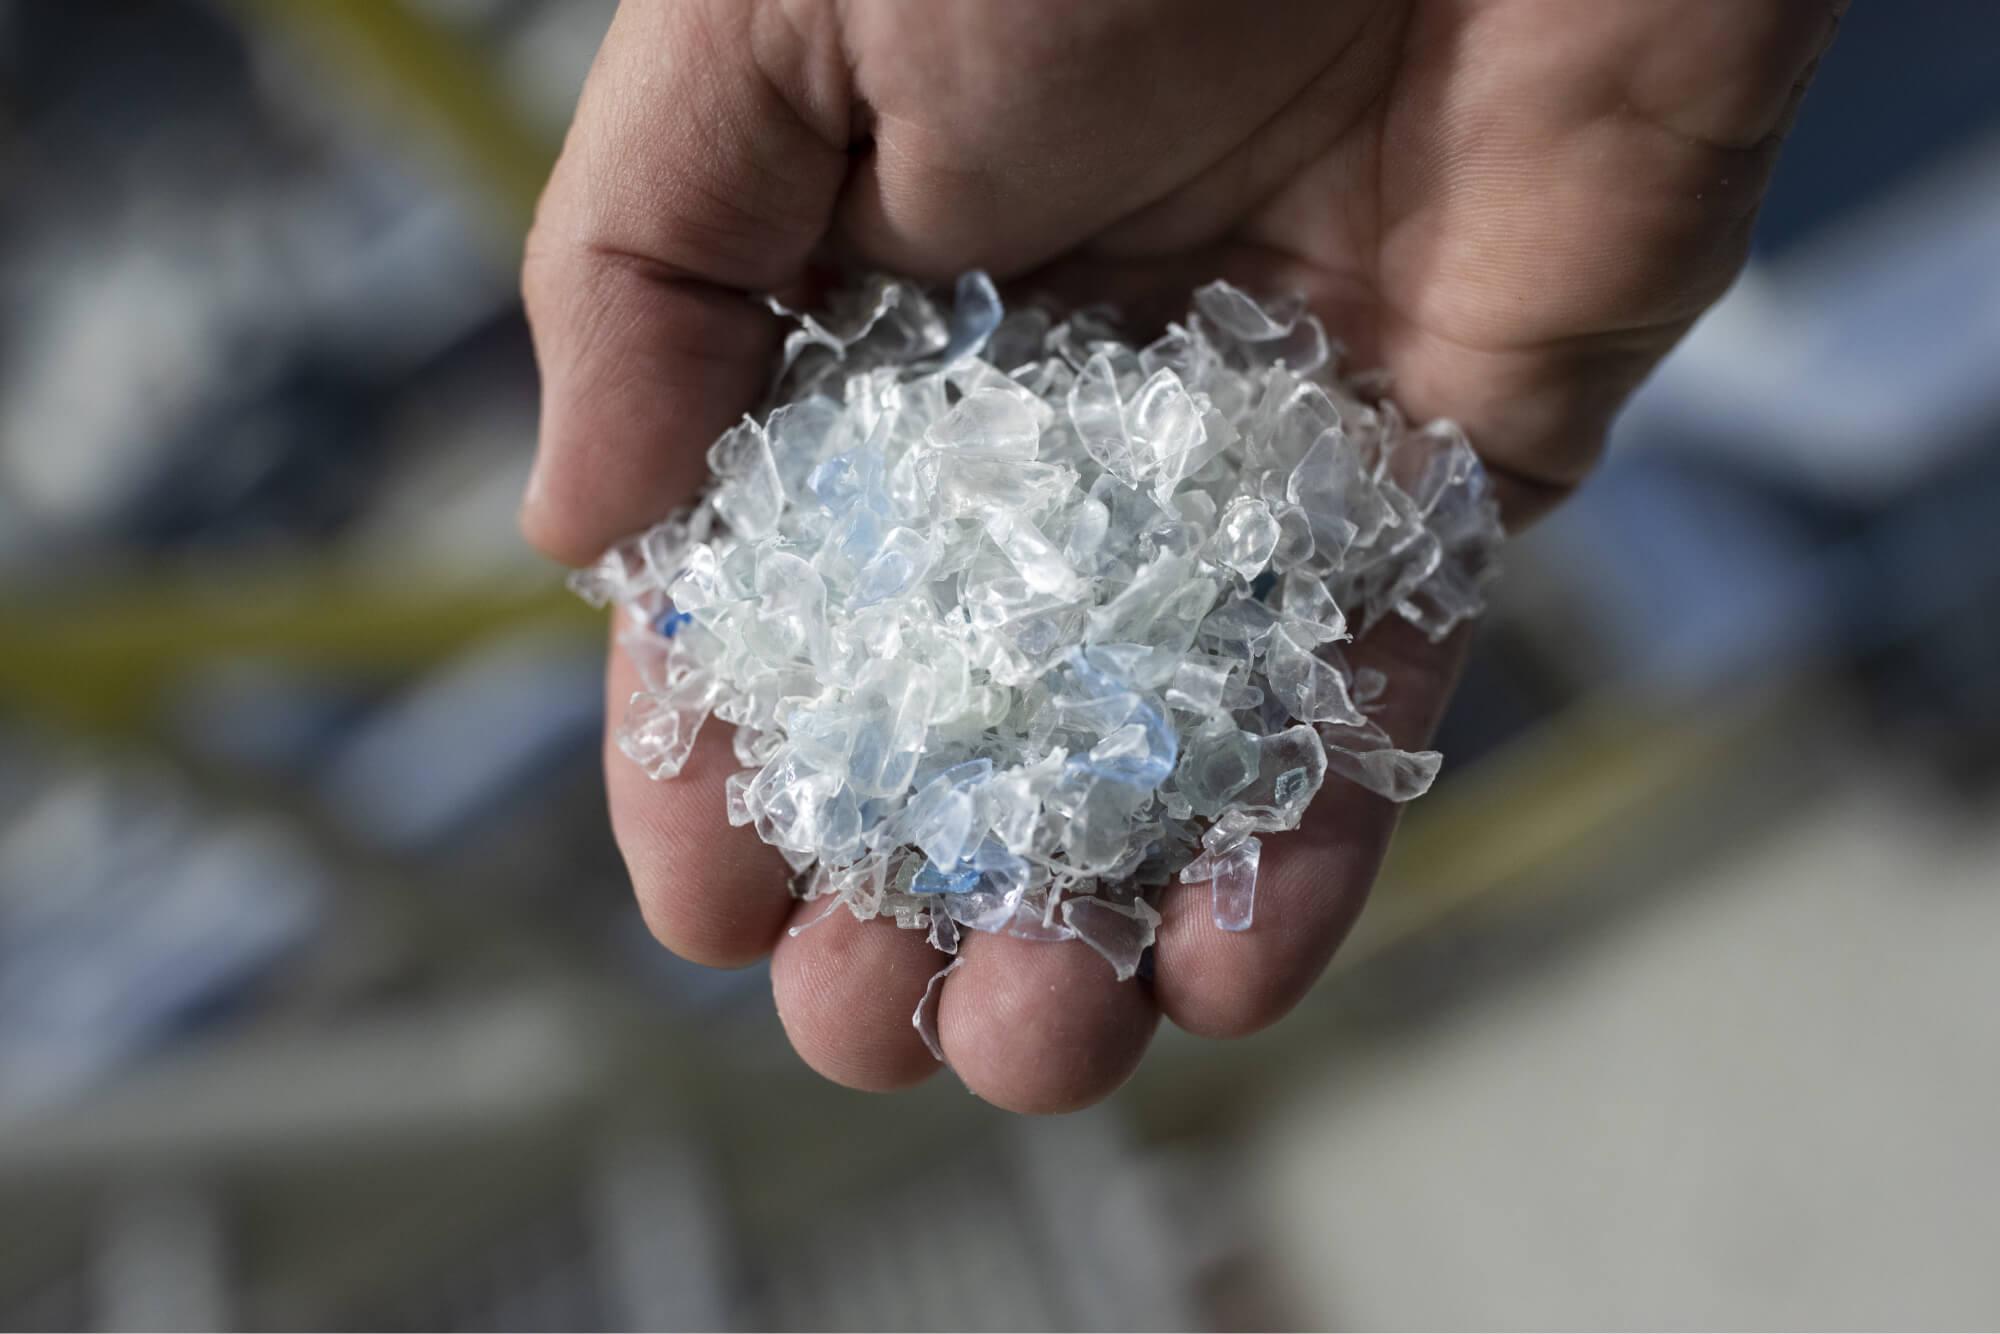 يمكن إعادة تدوير المواد المصنوعة من البلاستيك 3-5 مرات فقط
مصدر: ريباوند